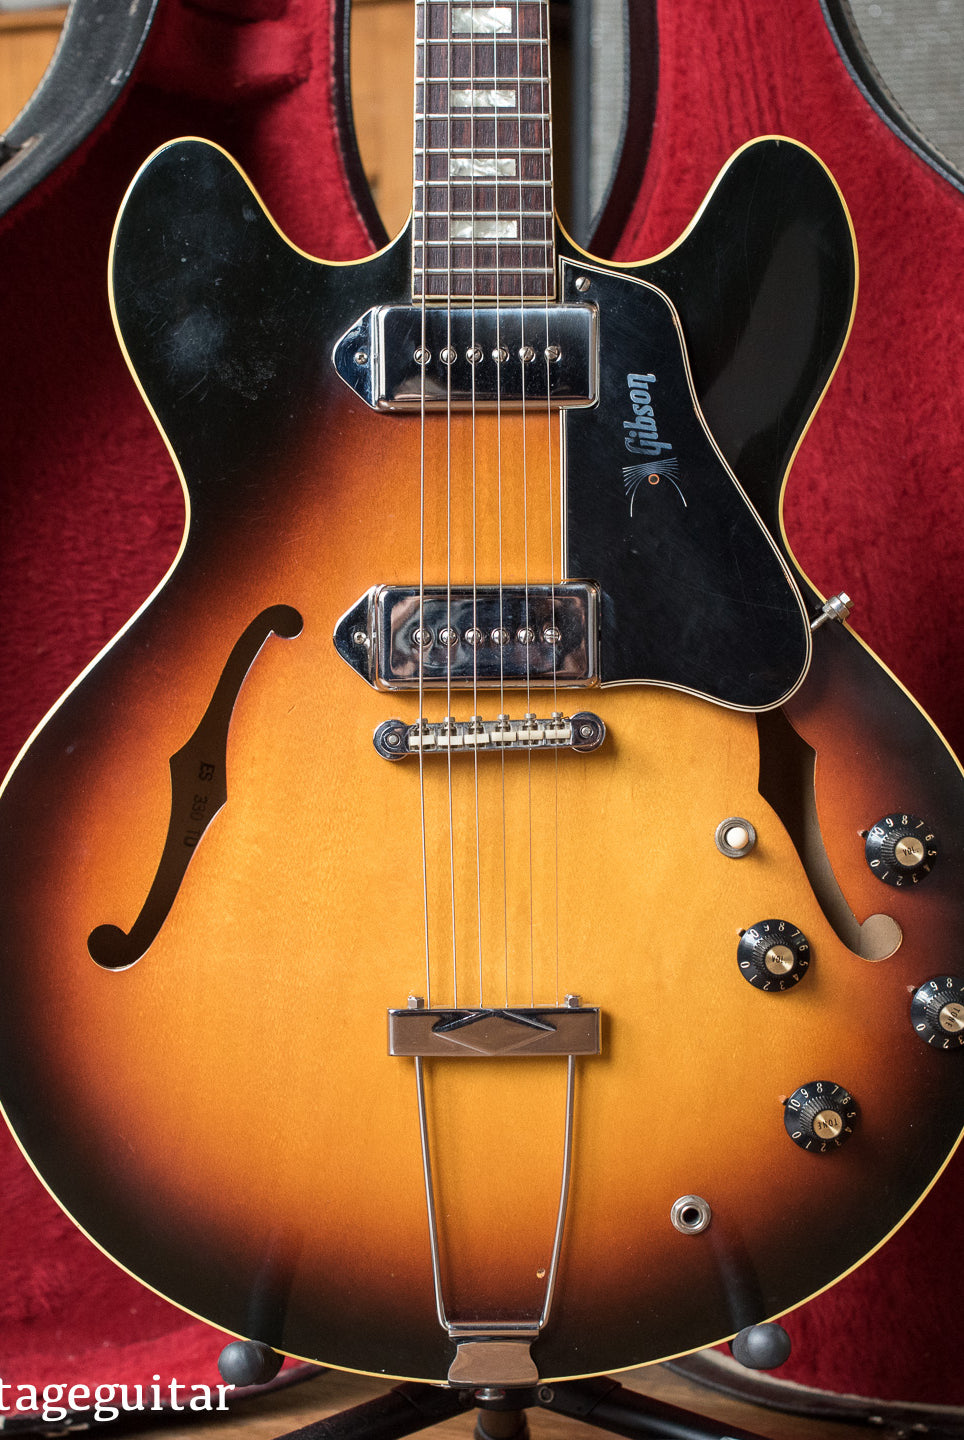 Vintage 1968 Gibson ES-330TD guitar